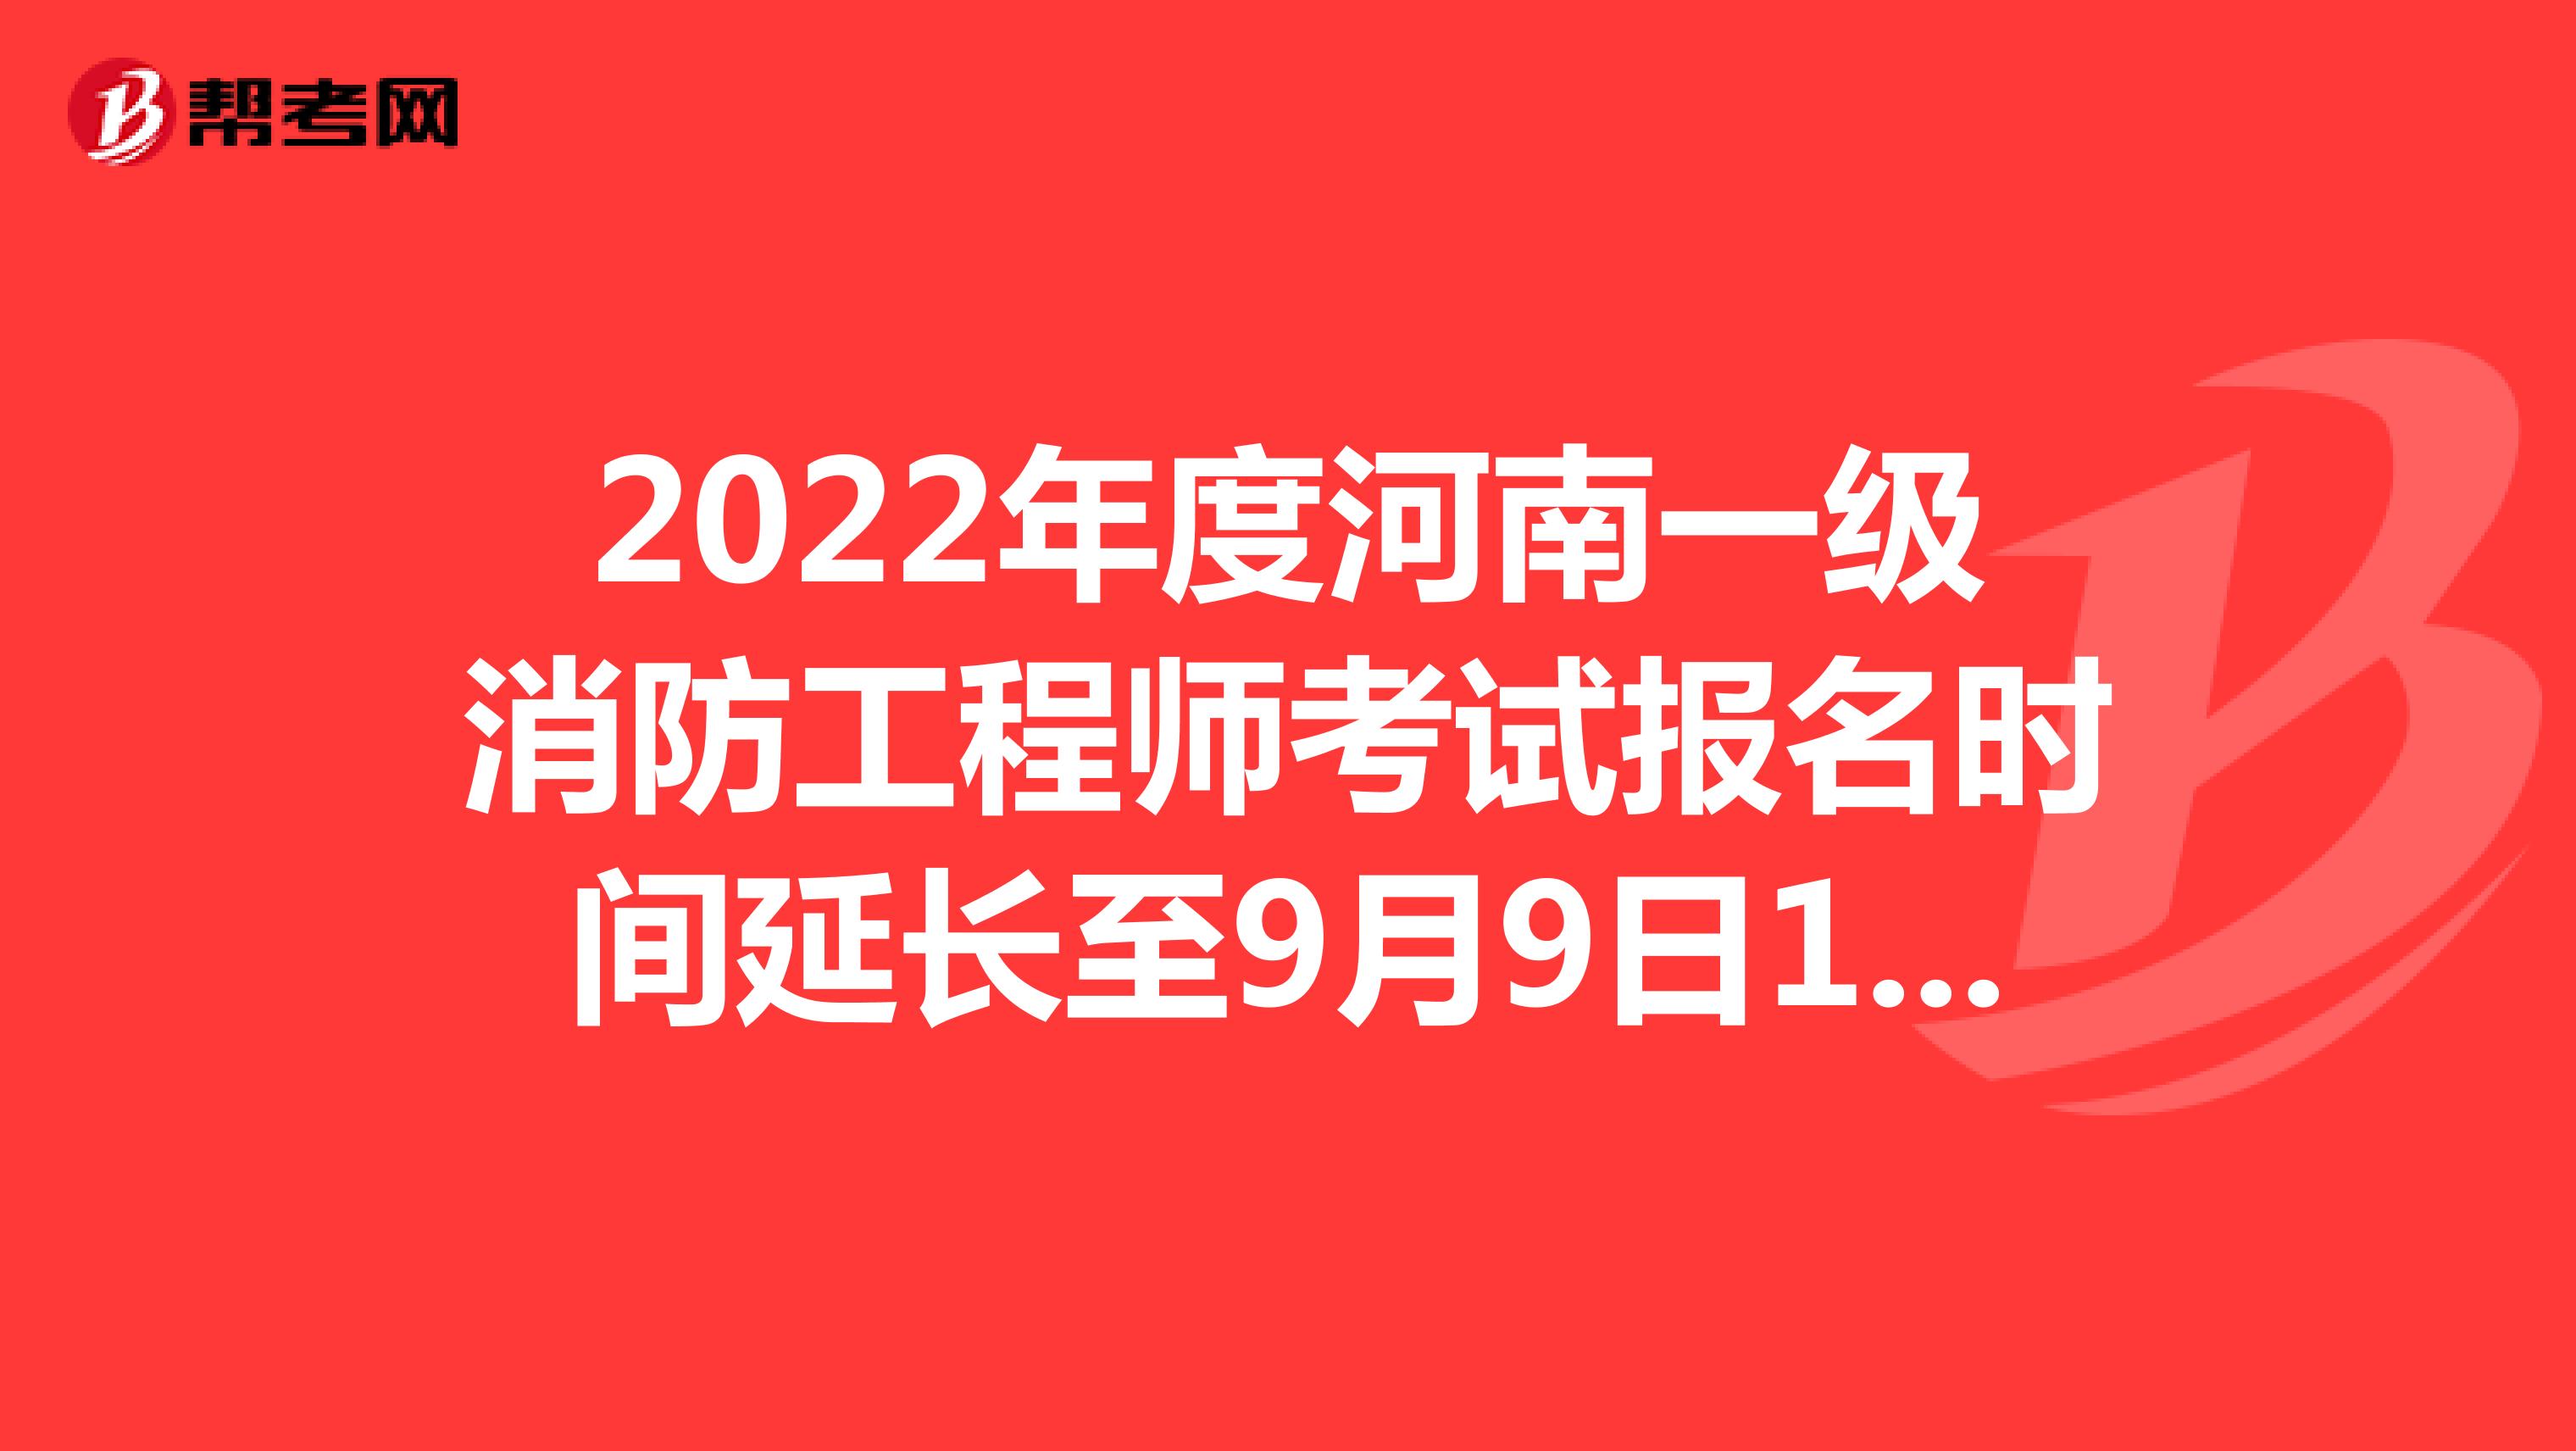 2022年度河南一级消防工程师考试报名时间延长至9月9日17：00